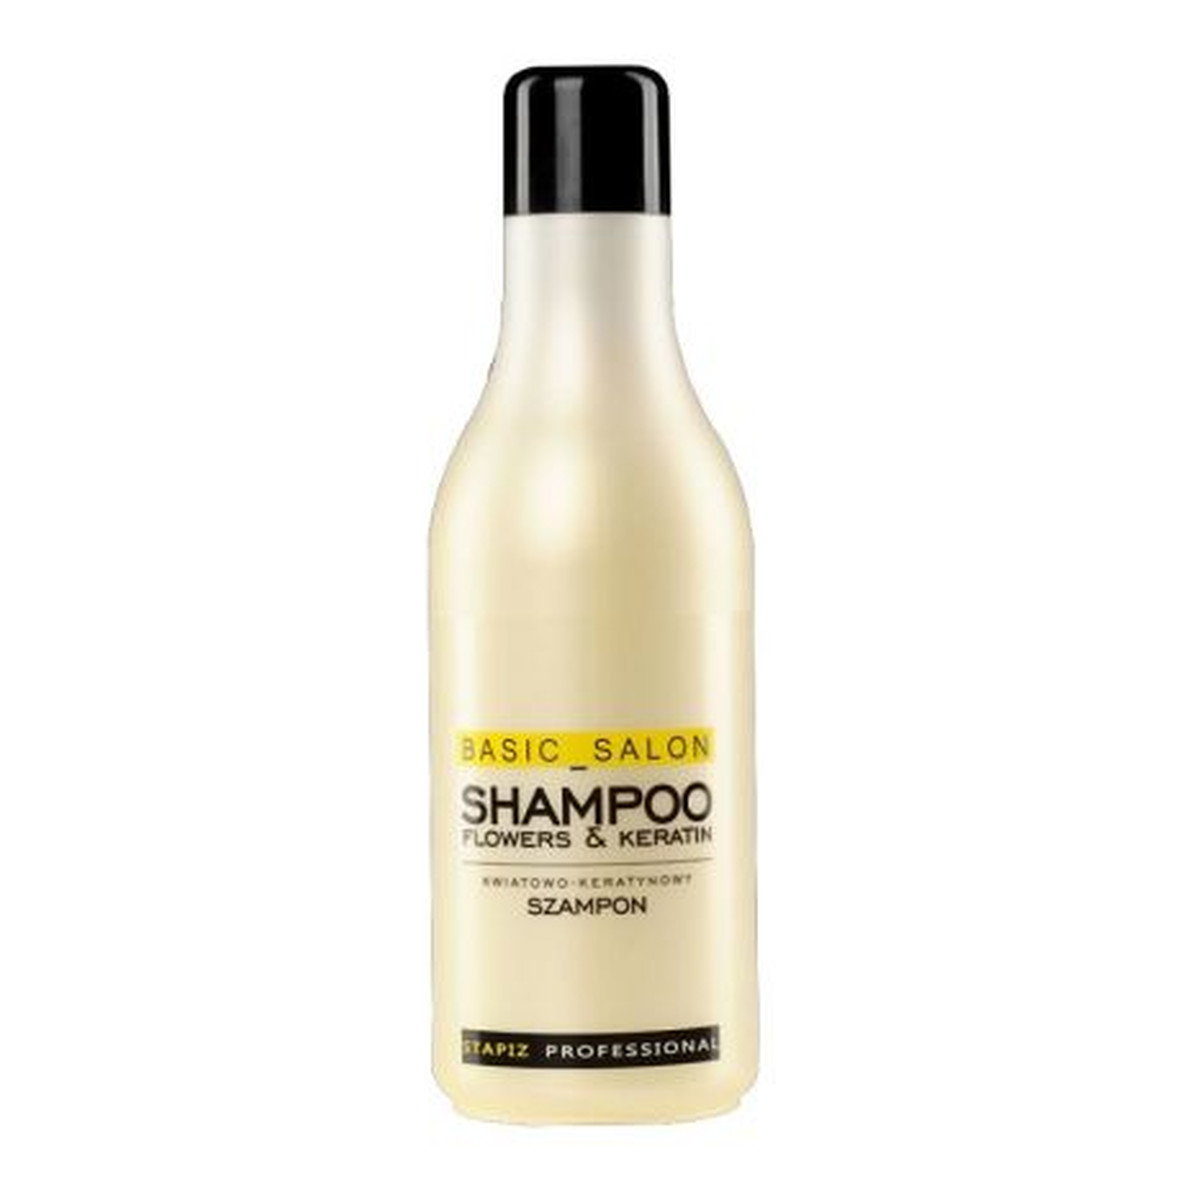 Stapiz Professional Flowers & Keratin Shampoo Szampon kwiatowo-keratynowy do włosów 1000ml